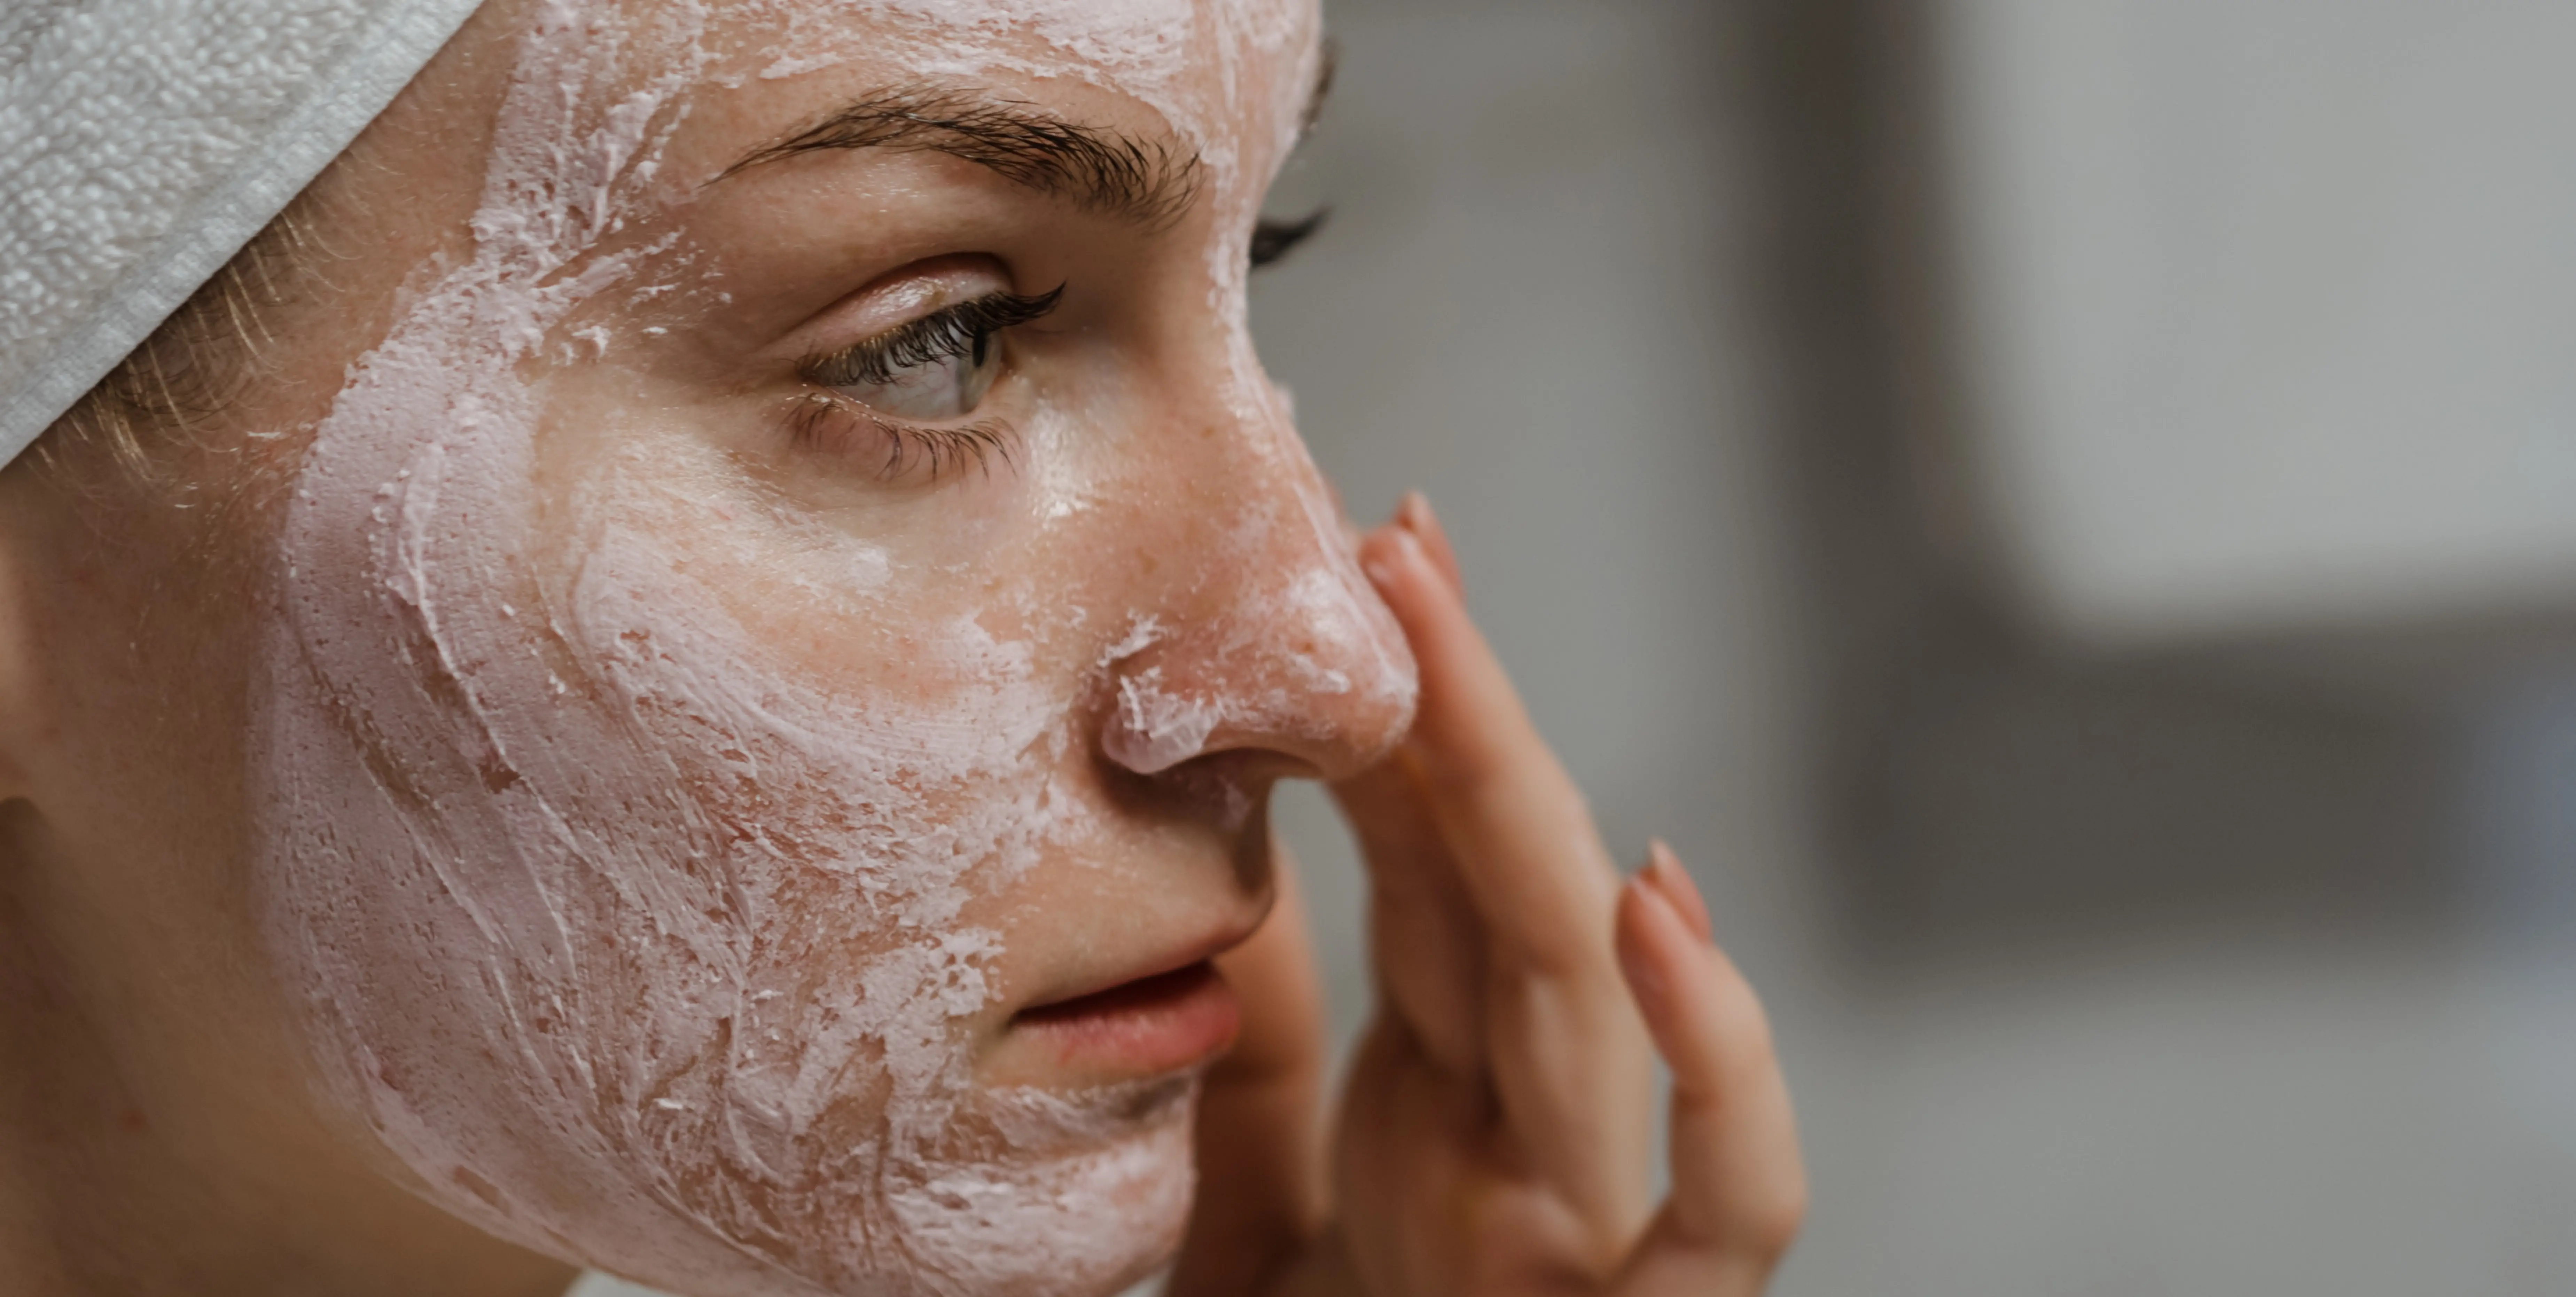 Rutina de belleza: 4 claves para cuidar tu piel